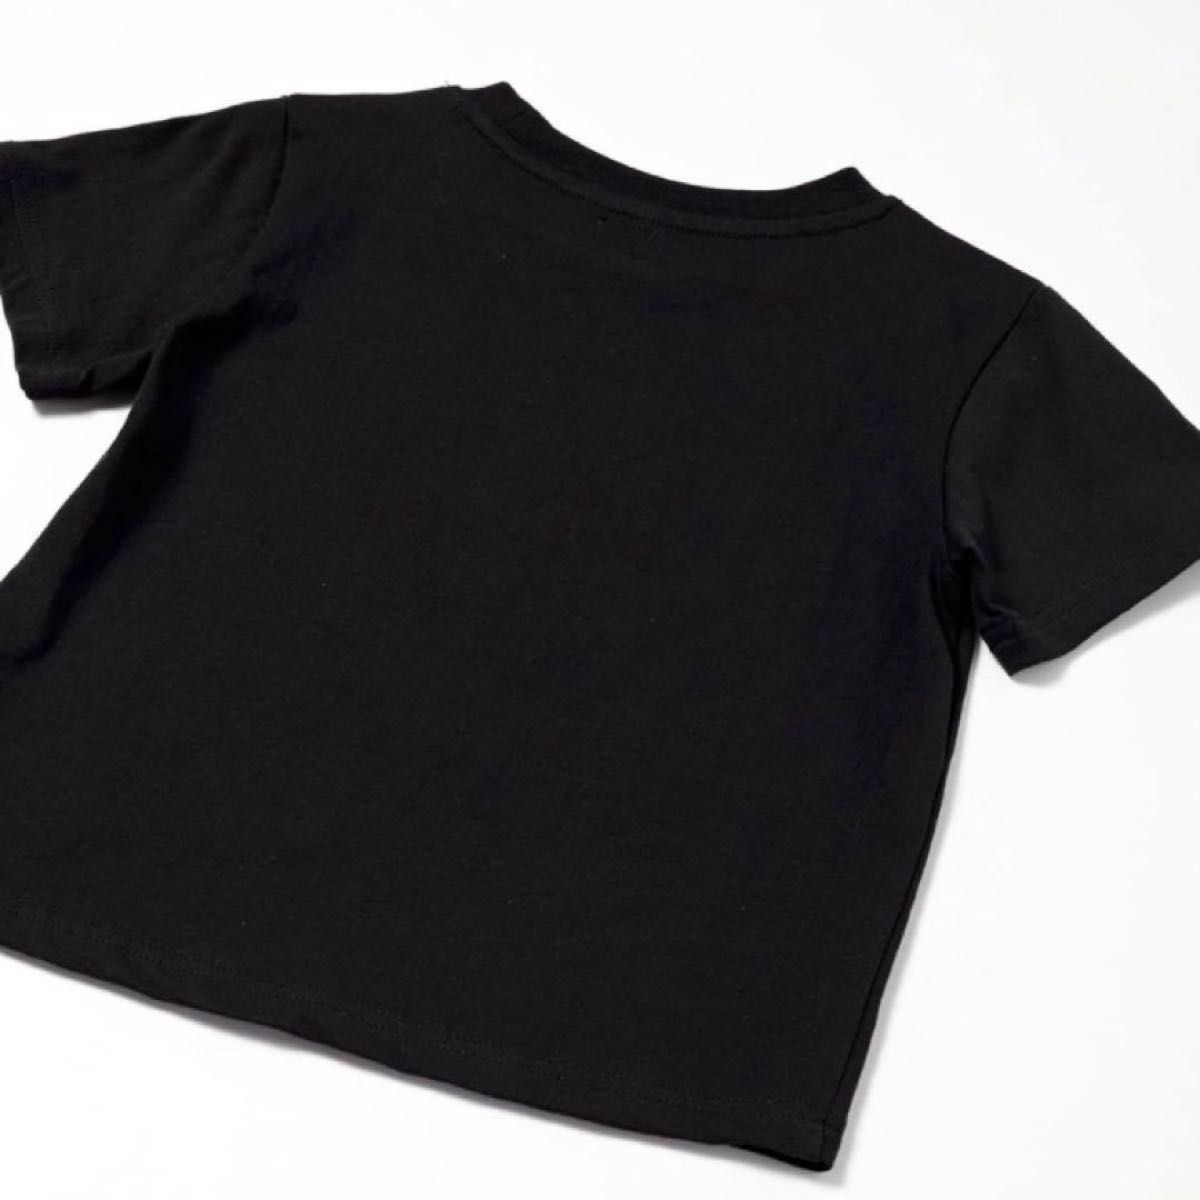 LOOK by BEAMS mini スプレー ロゴ Tシャツ ユニセックス 子供 キッズ 男の子 女の子 男女兼用 ブラック 黒